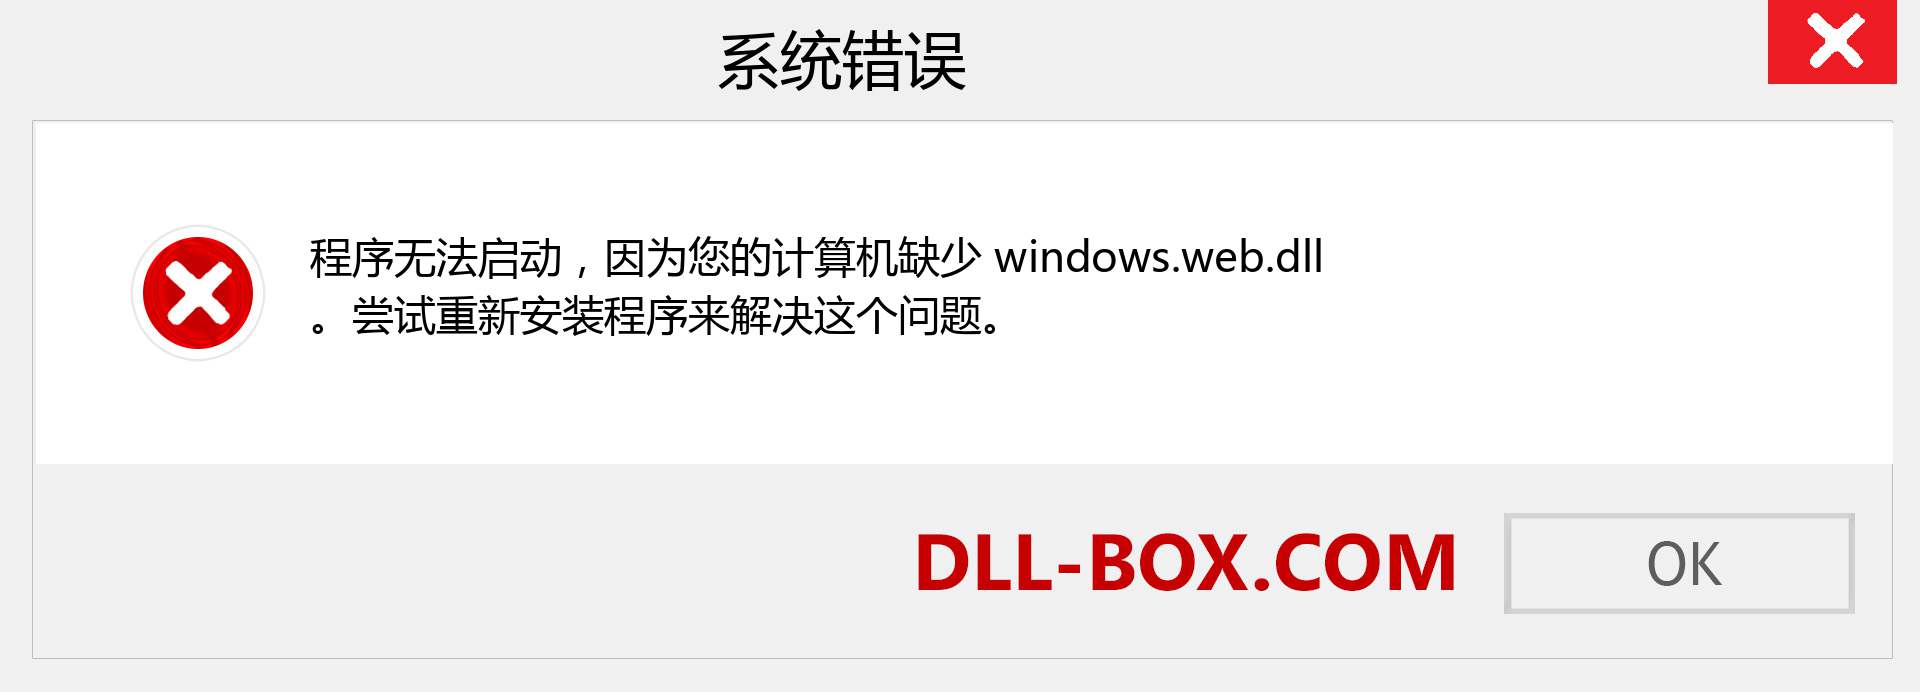 windows.web.dll 文件丢失？。 适用于 Windows 7、8、10 的下载 - 修复 Windows、照片、图像上的 windows.web dll 丢失错误